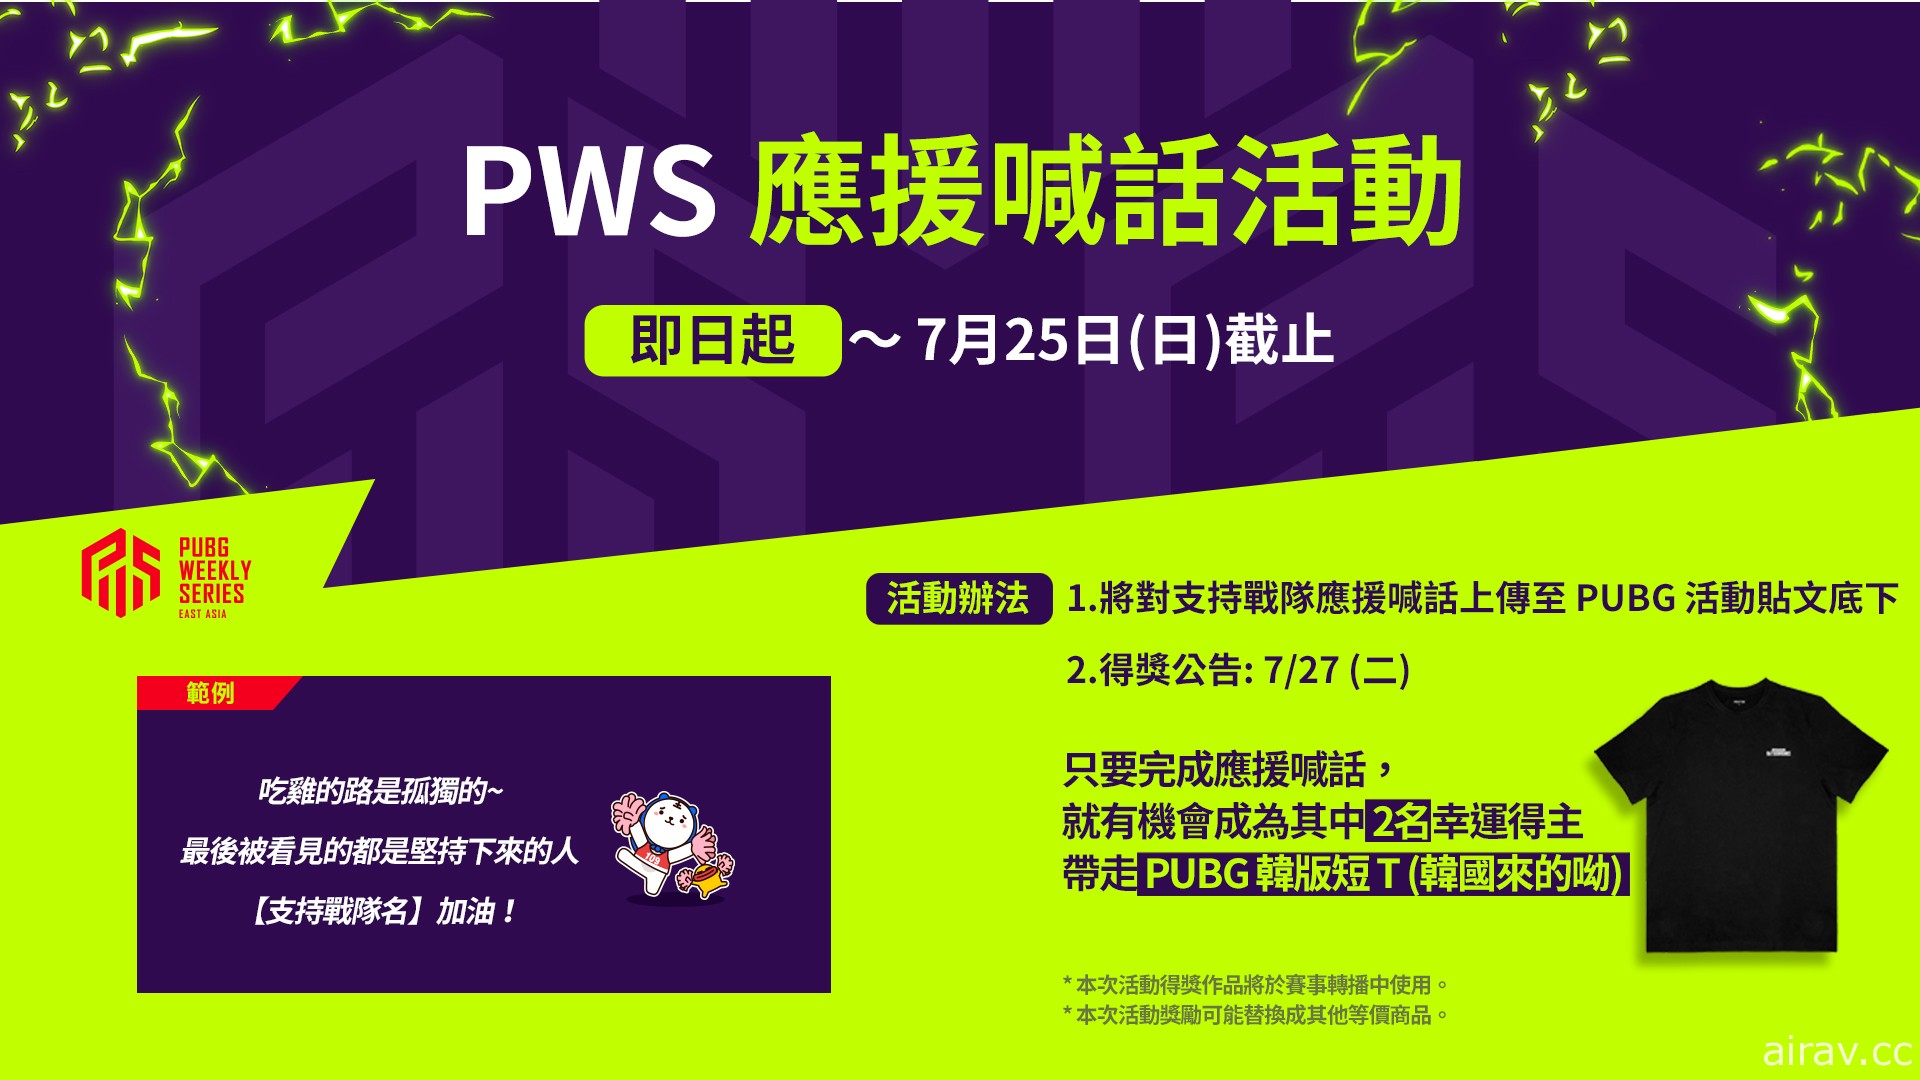 《絕地求生》PWS 東亞聯賽戰火再起 第一週賽事今晚開打